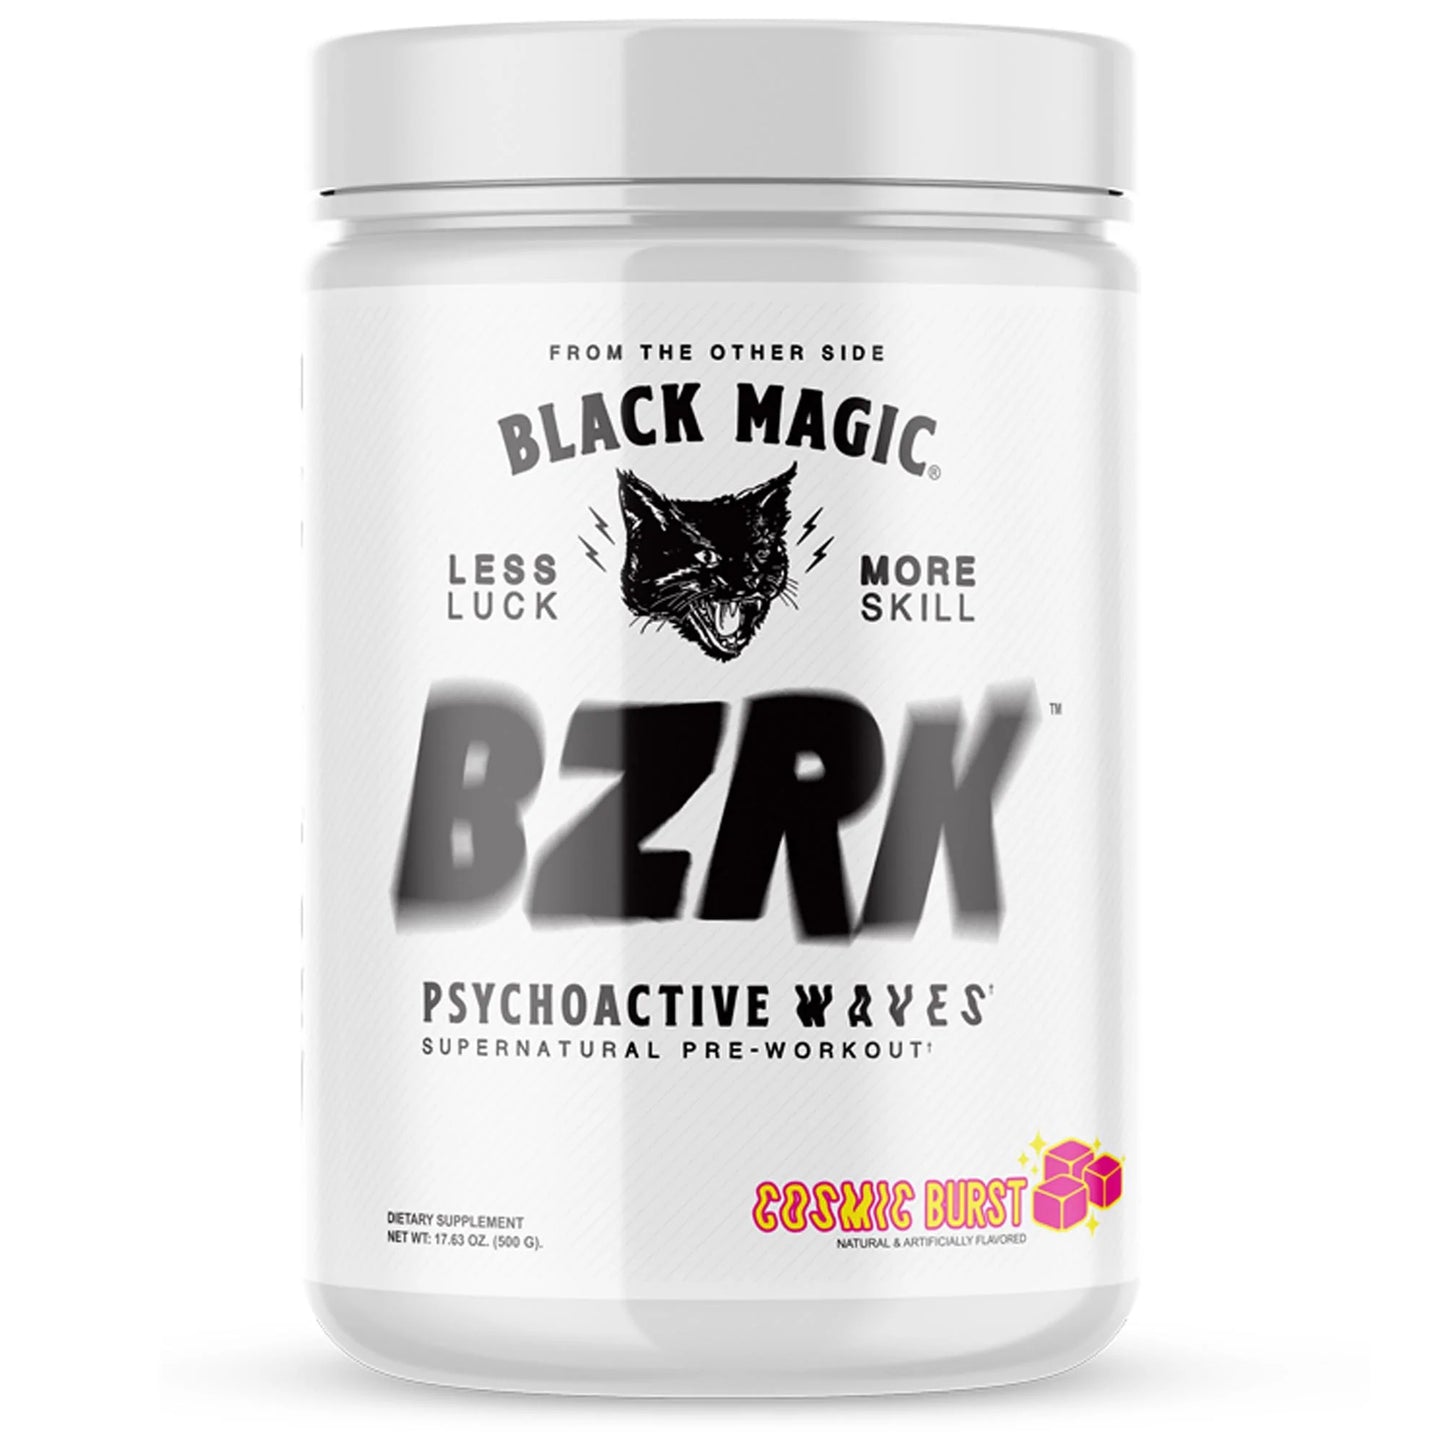 Black Magic BZRK Supplement Container